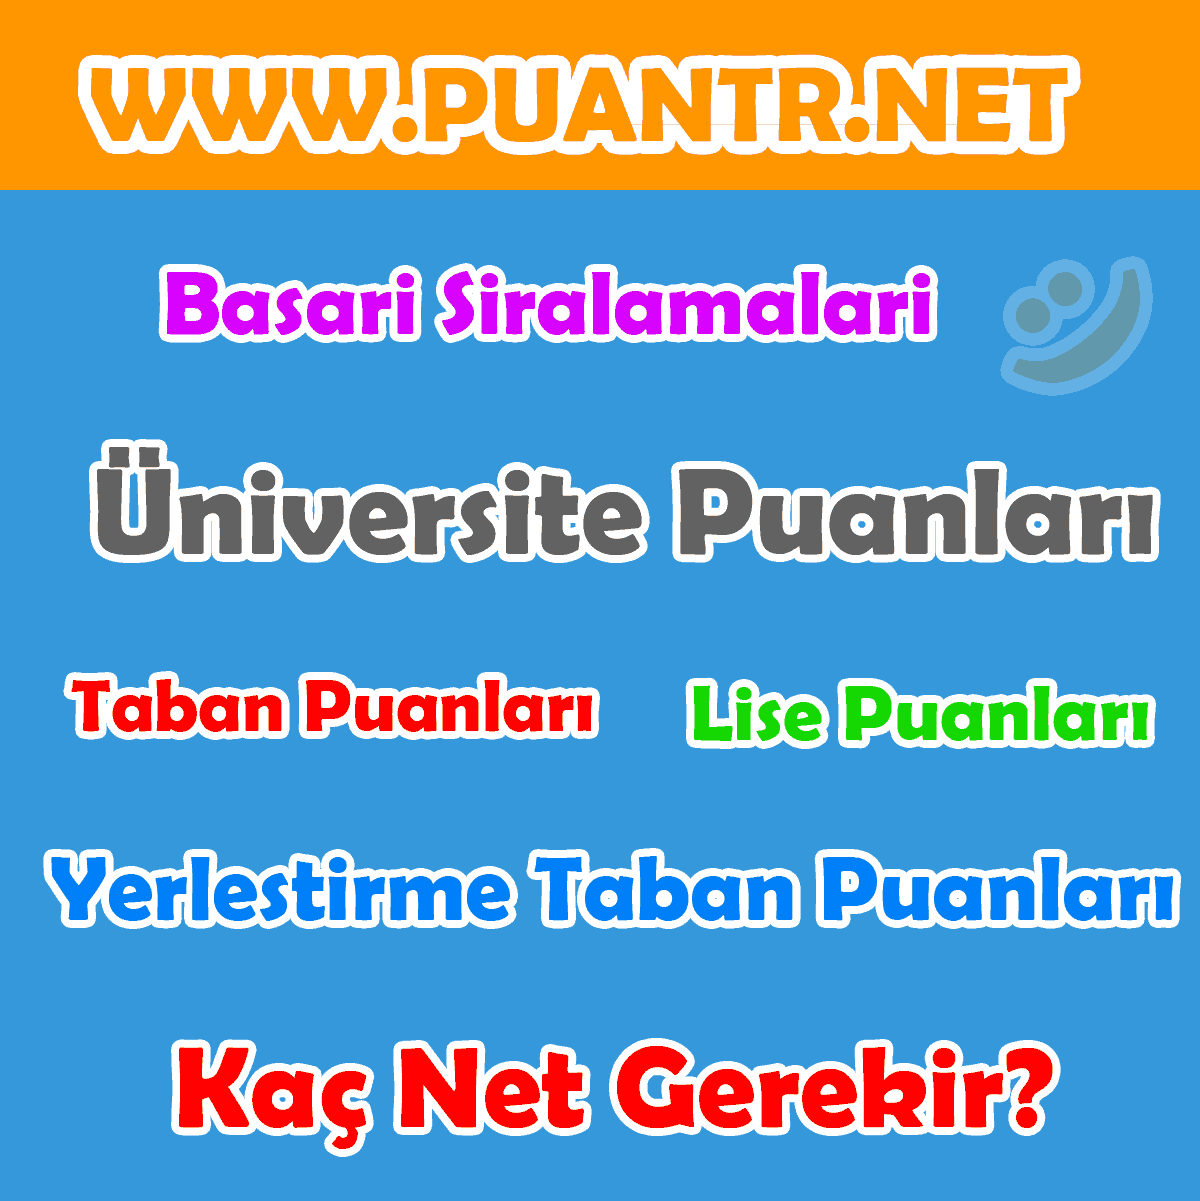 www.puantr.net